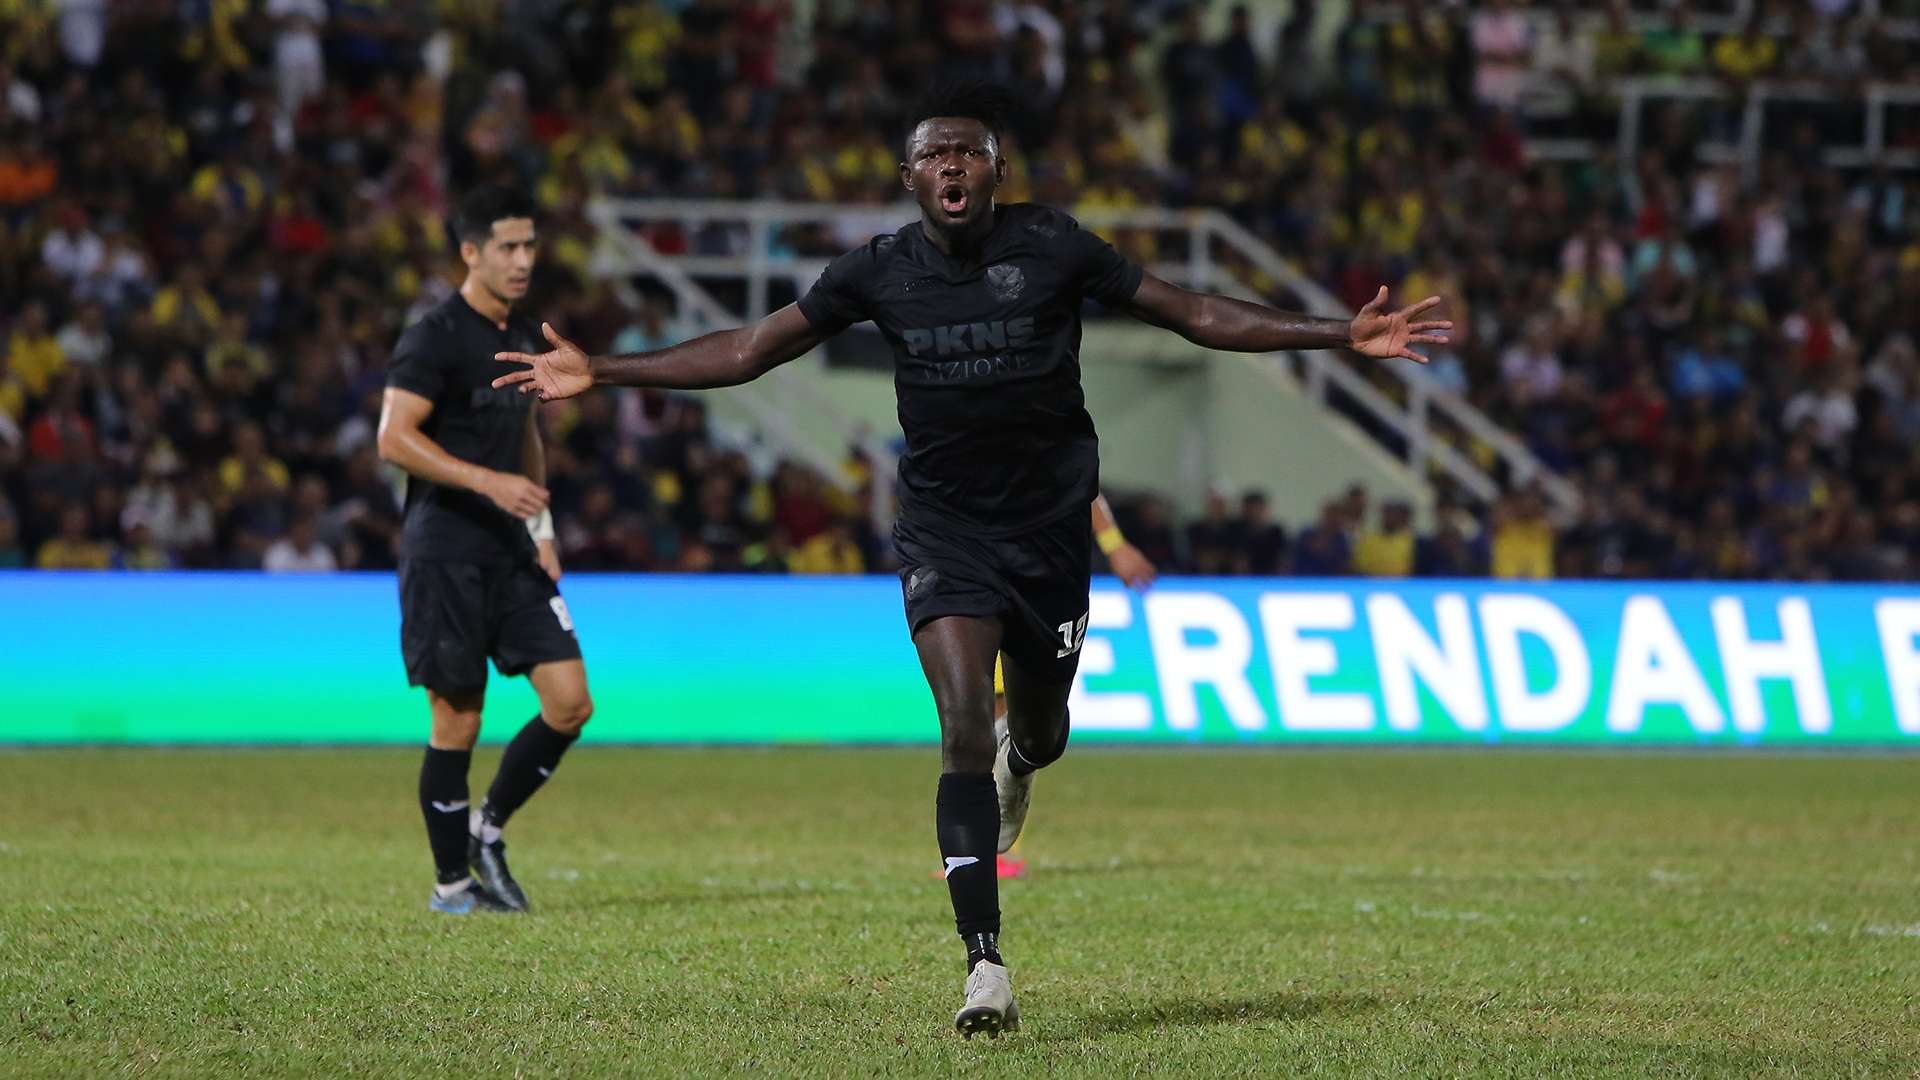 Ifedayo Olusegun, Pahang v Selangor, Super League, 29 Feb 2020